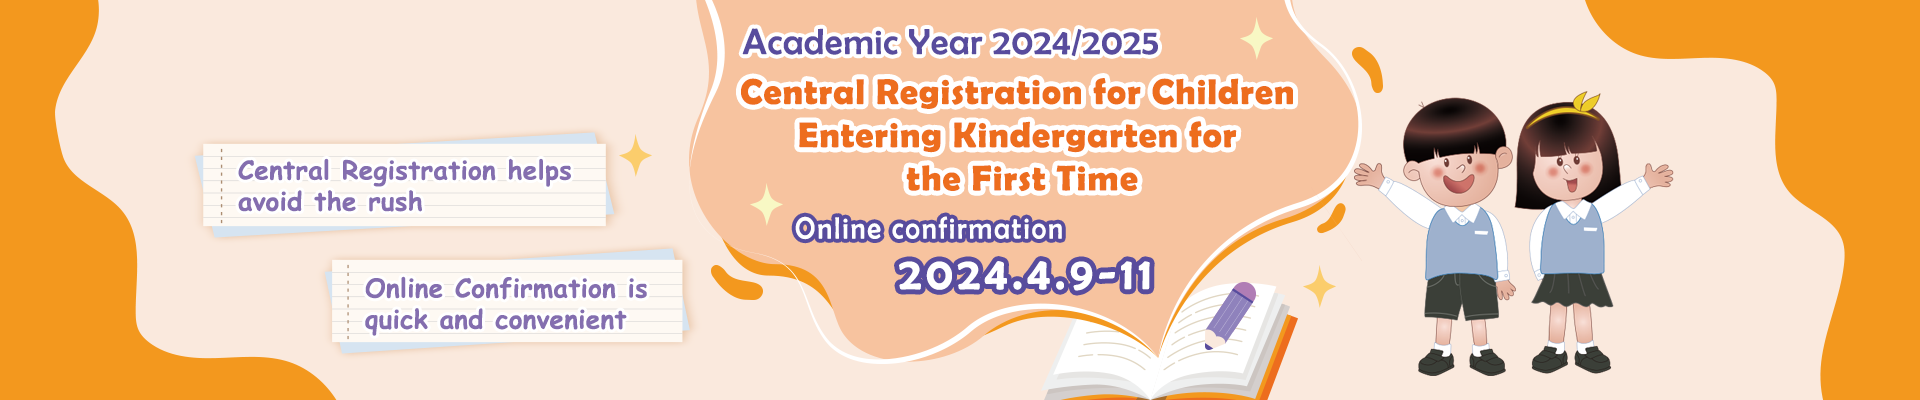 Central Registration for Children Entering Kindergarten for the First Time - 2024/2025